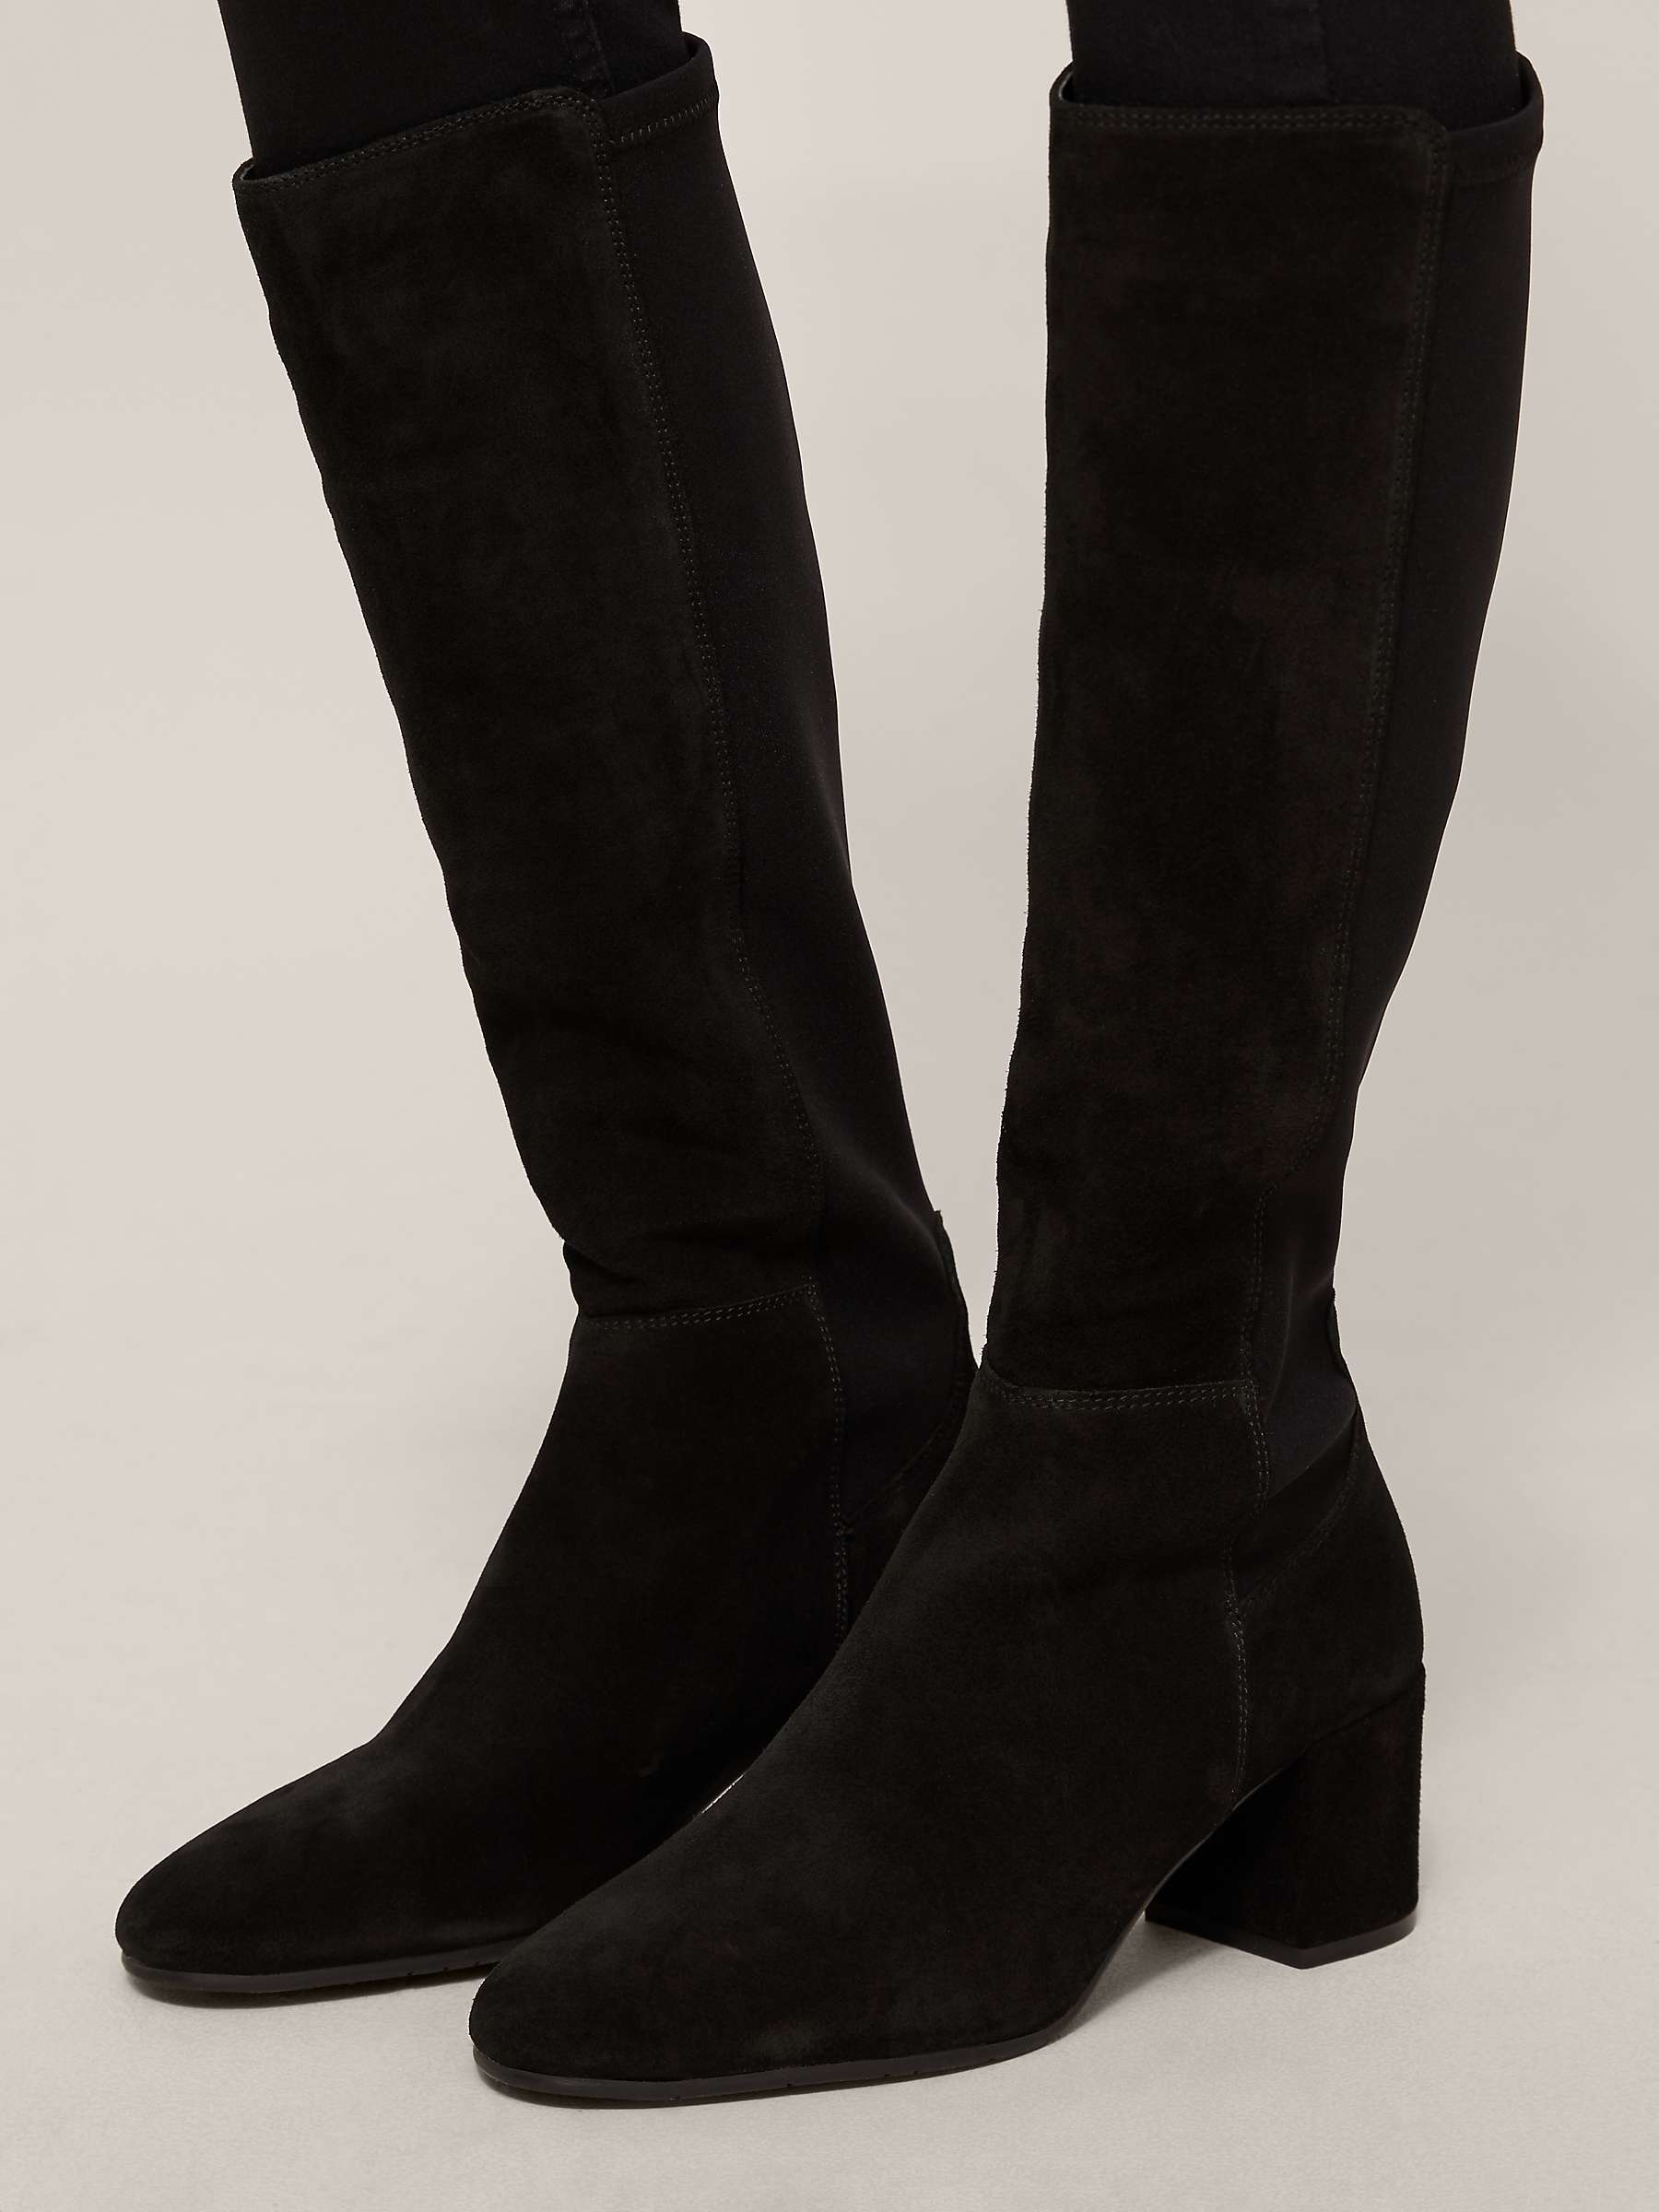 Buy John Lewis Sadie Suede Knee High Boots Online at johnlewis.com